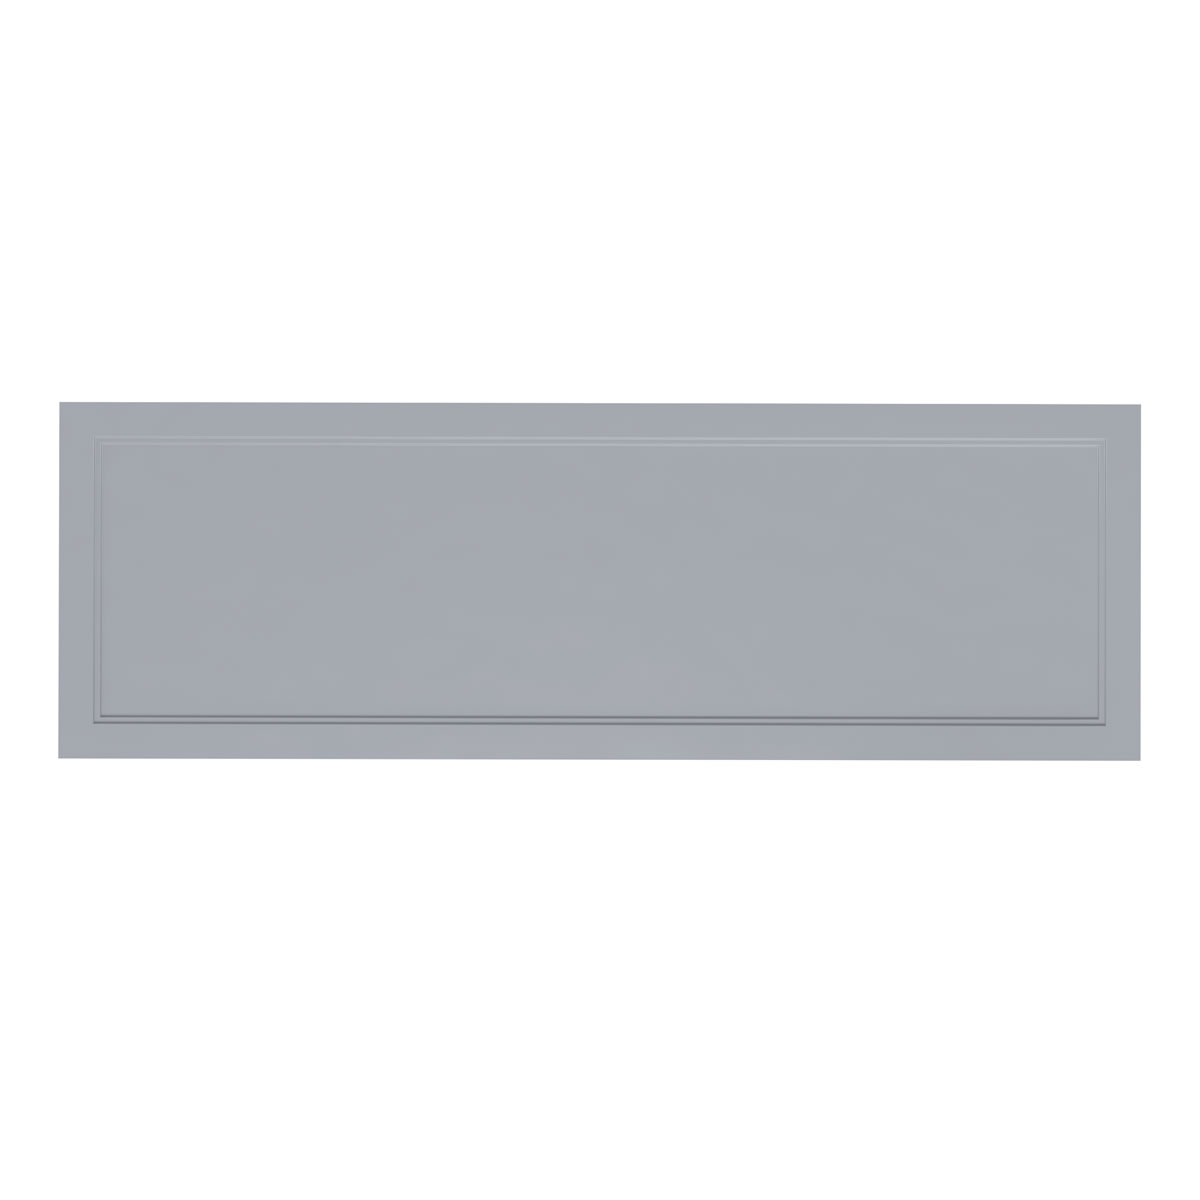 Arundel 170 bath side panel – Classic Grey